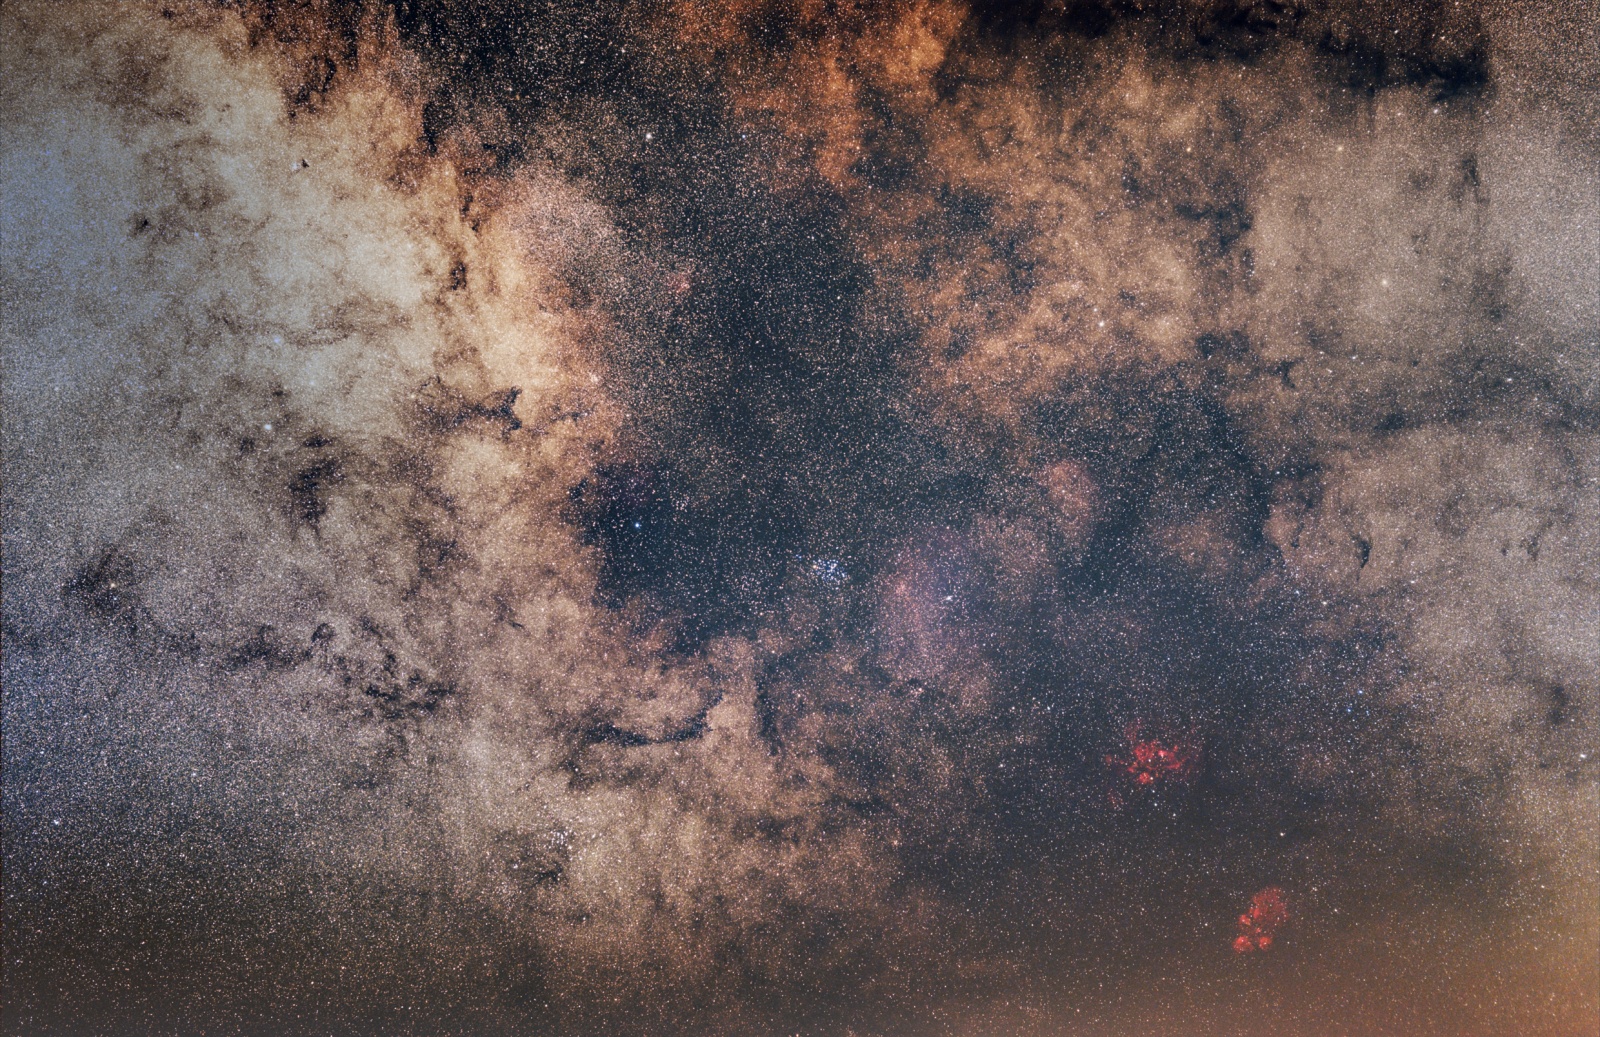 NGC6334_v1_7.jpg